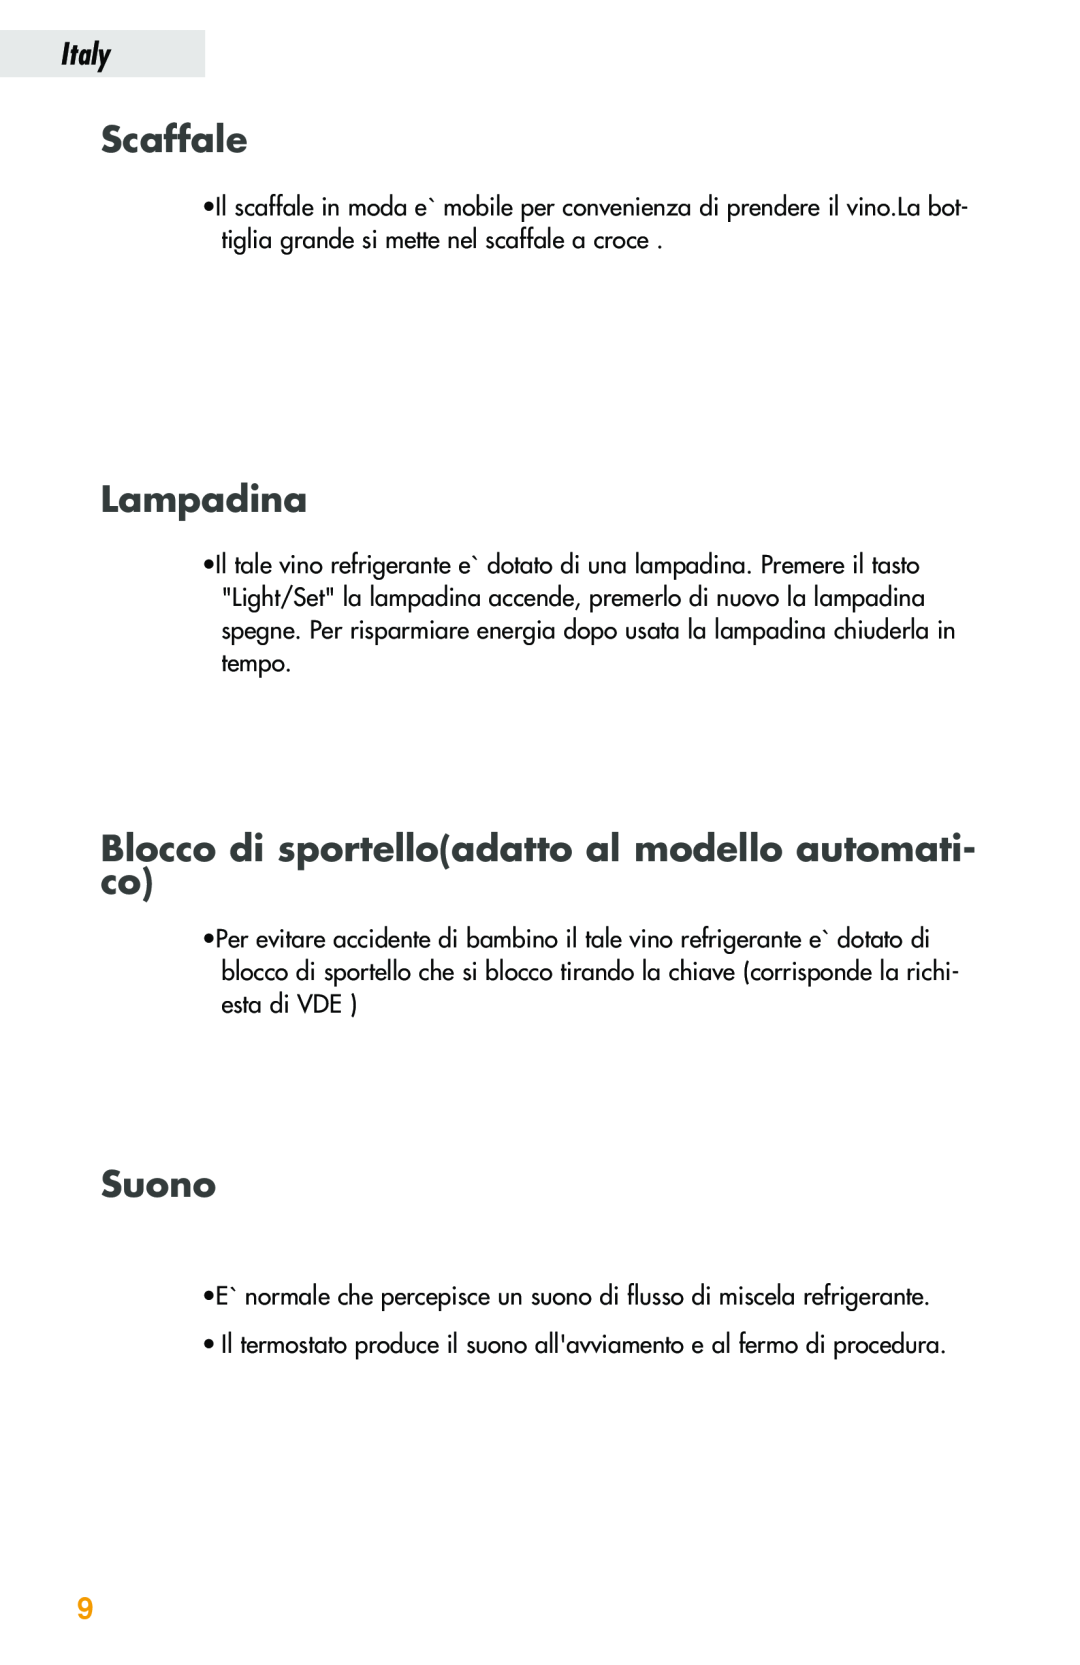 Haier JC-82GB manual Scaffale, Lampadina, Blocco di sportelloadatto al modello automati- co, Suono, Italy 